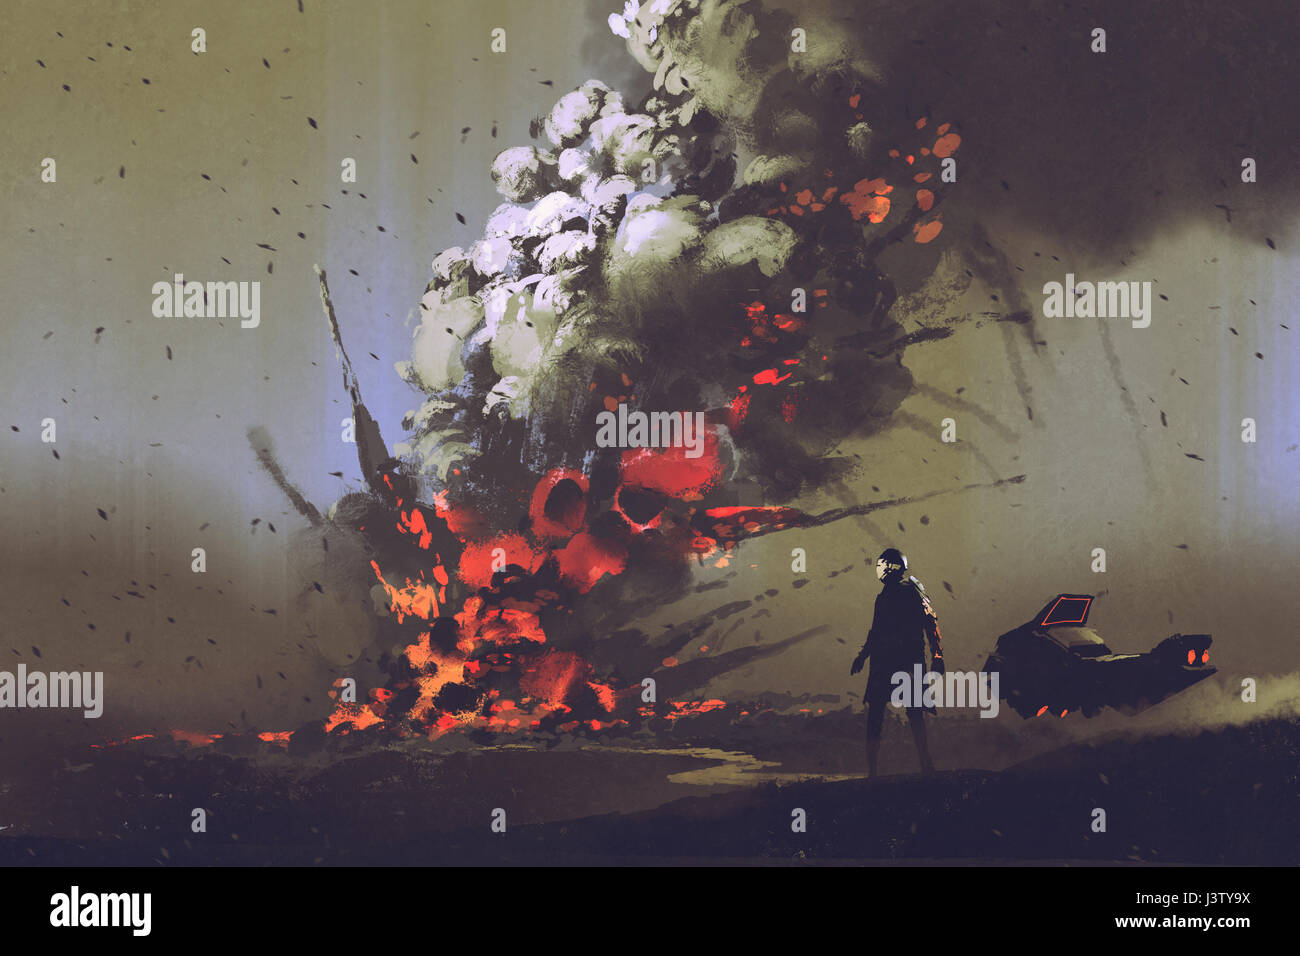 Scène de science-fiction de l'homme avec son véhicule à la recherche à l'explosion d'une bombe sur le terrain, illustration peinture Banque D'Images